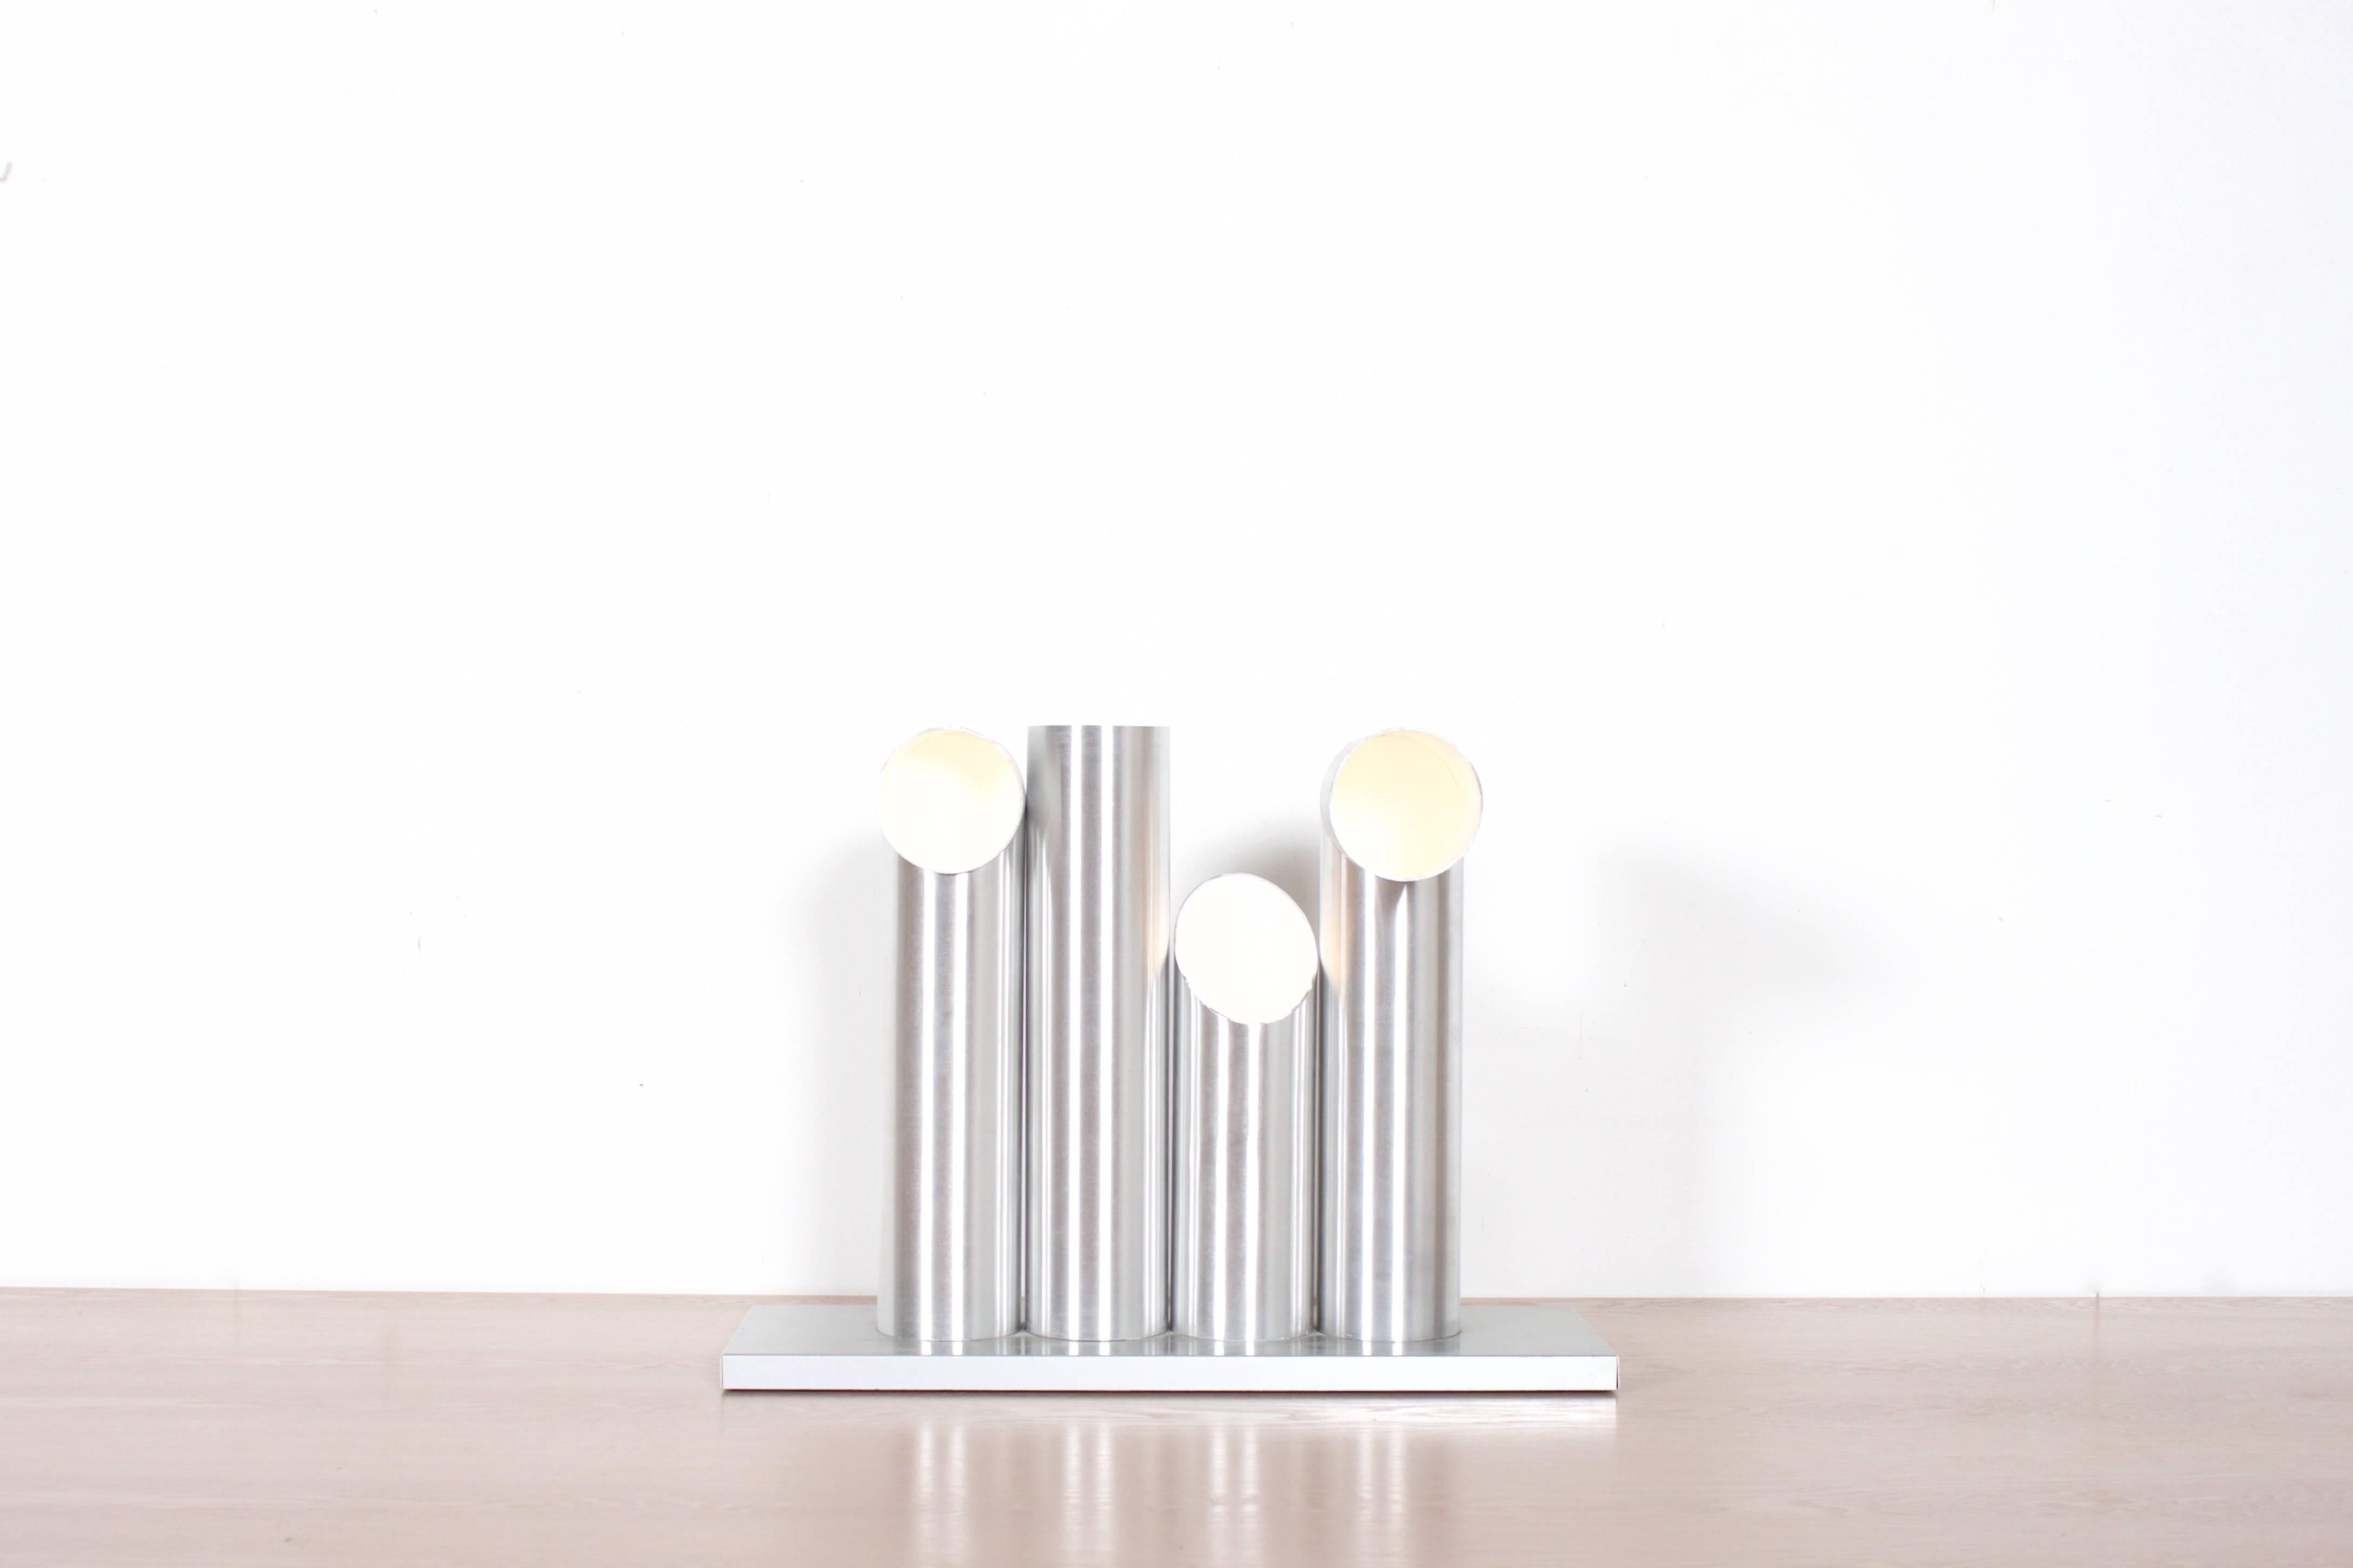 Sehr seltene RAAK 'Light Sculpture' Tisch-Stehleuchte in sehr gutem Zustand.

Die Lampe besteht aus vier eloxierten Aluminiumrohren, die alle eine unterschiedliche Form haben und untereinander in endlosen Kombinationen ausgetauscht werden